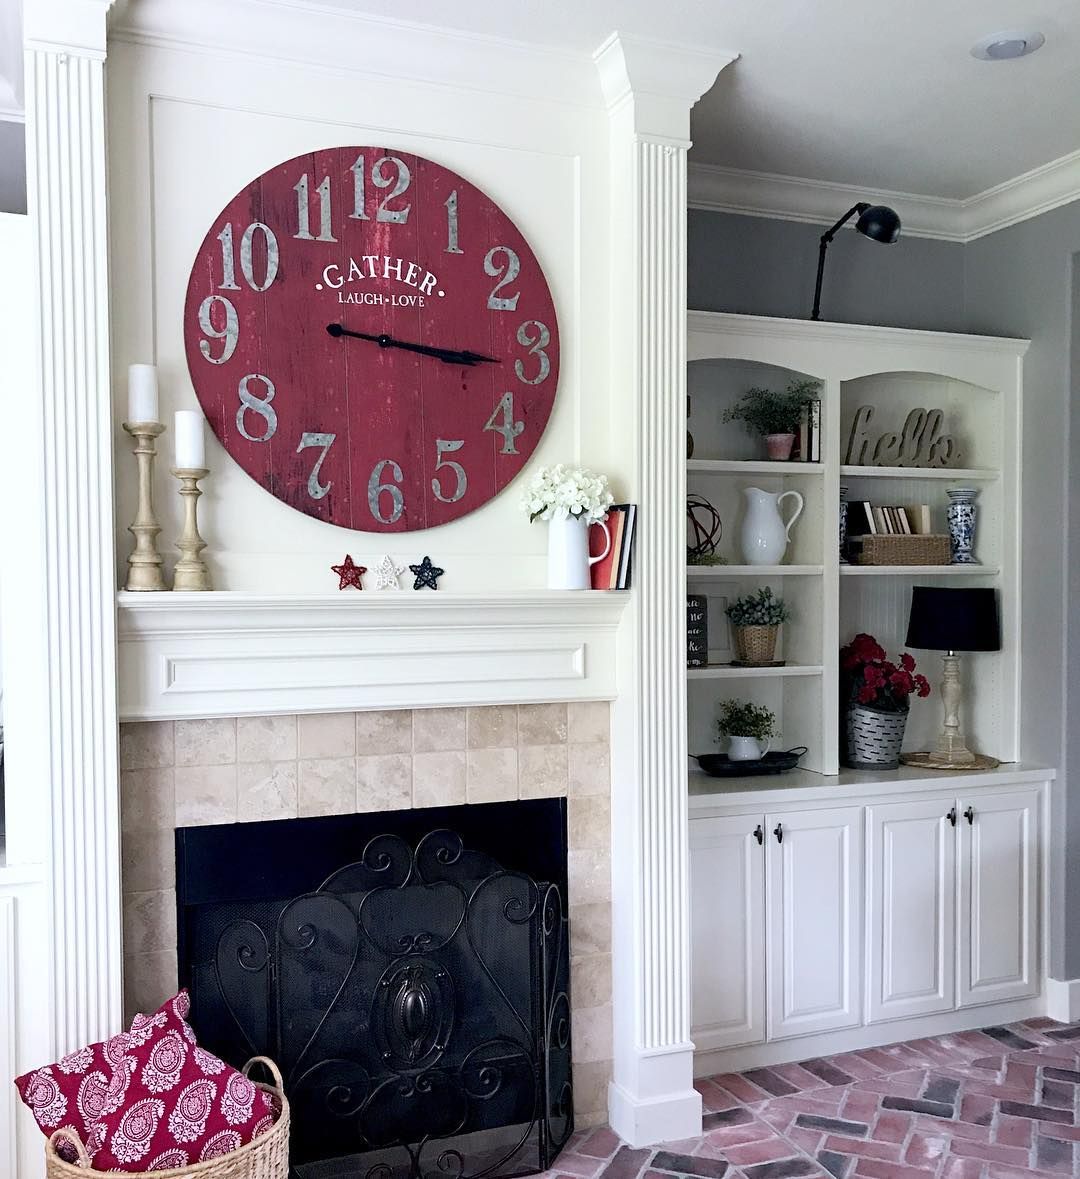 Fireplace Clock Unique No Photo Description Available Etsy Shop In 2019